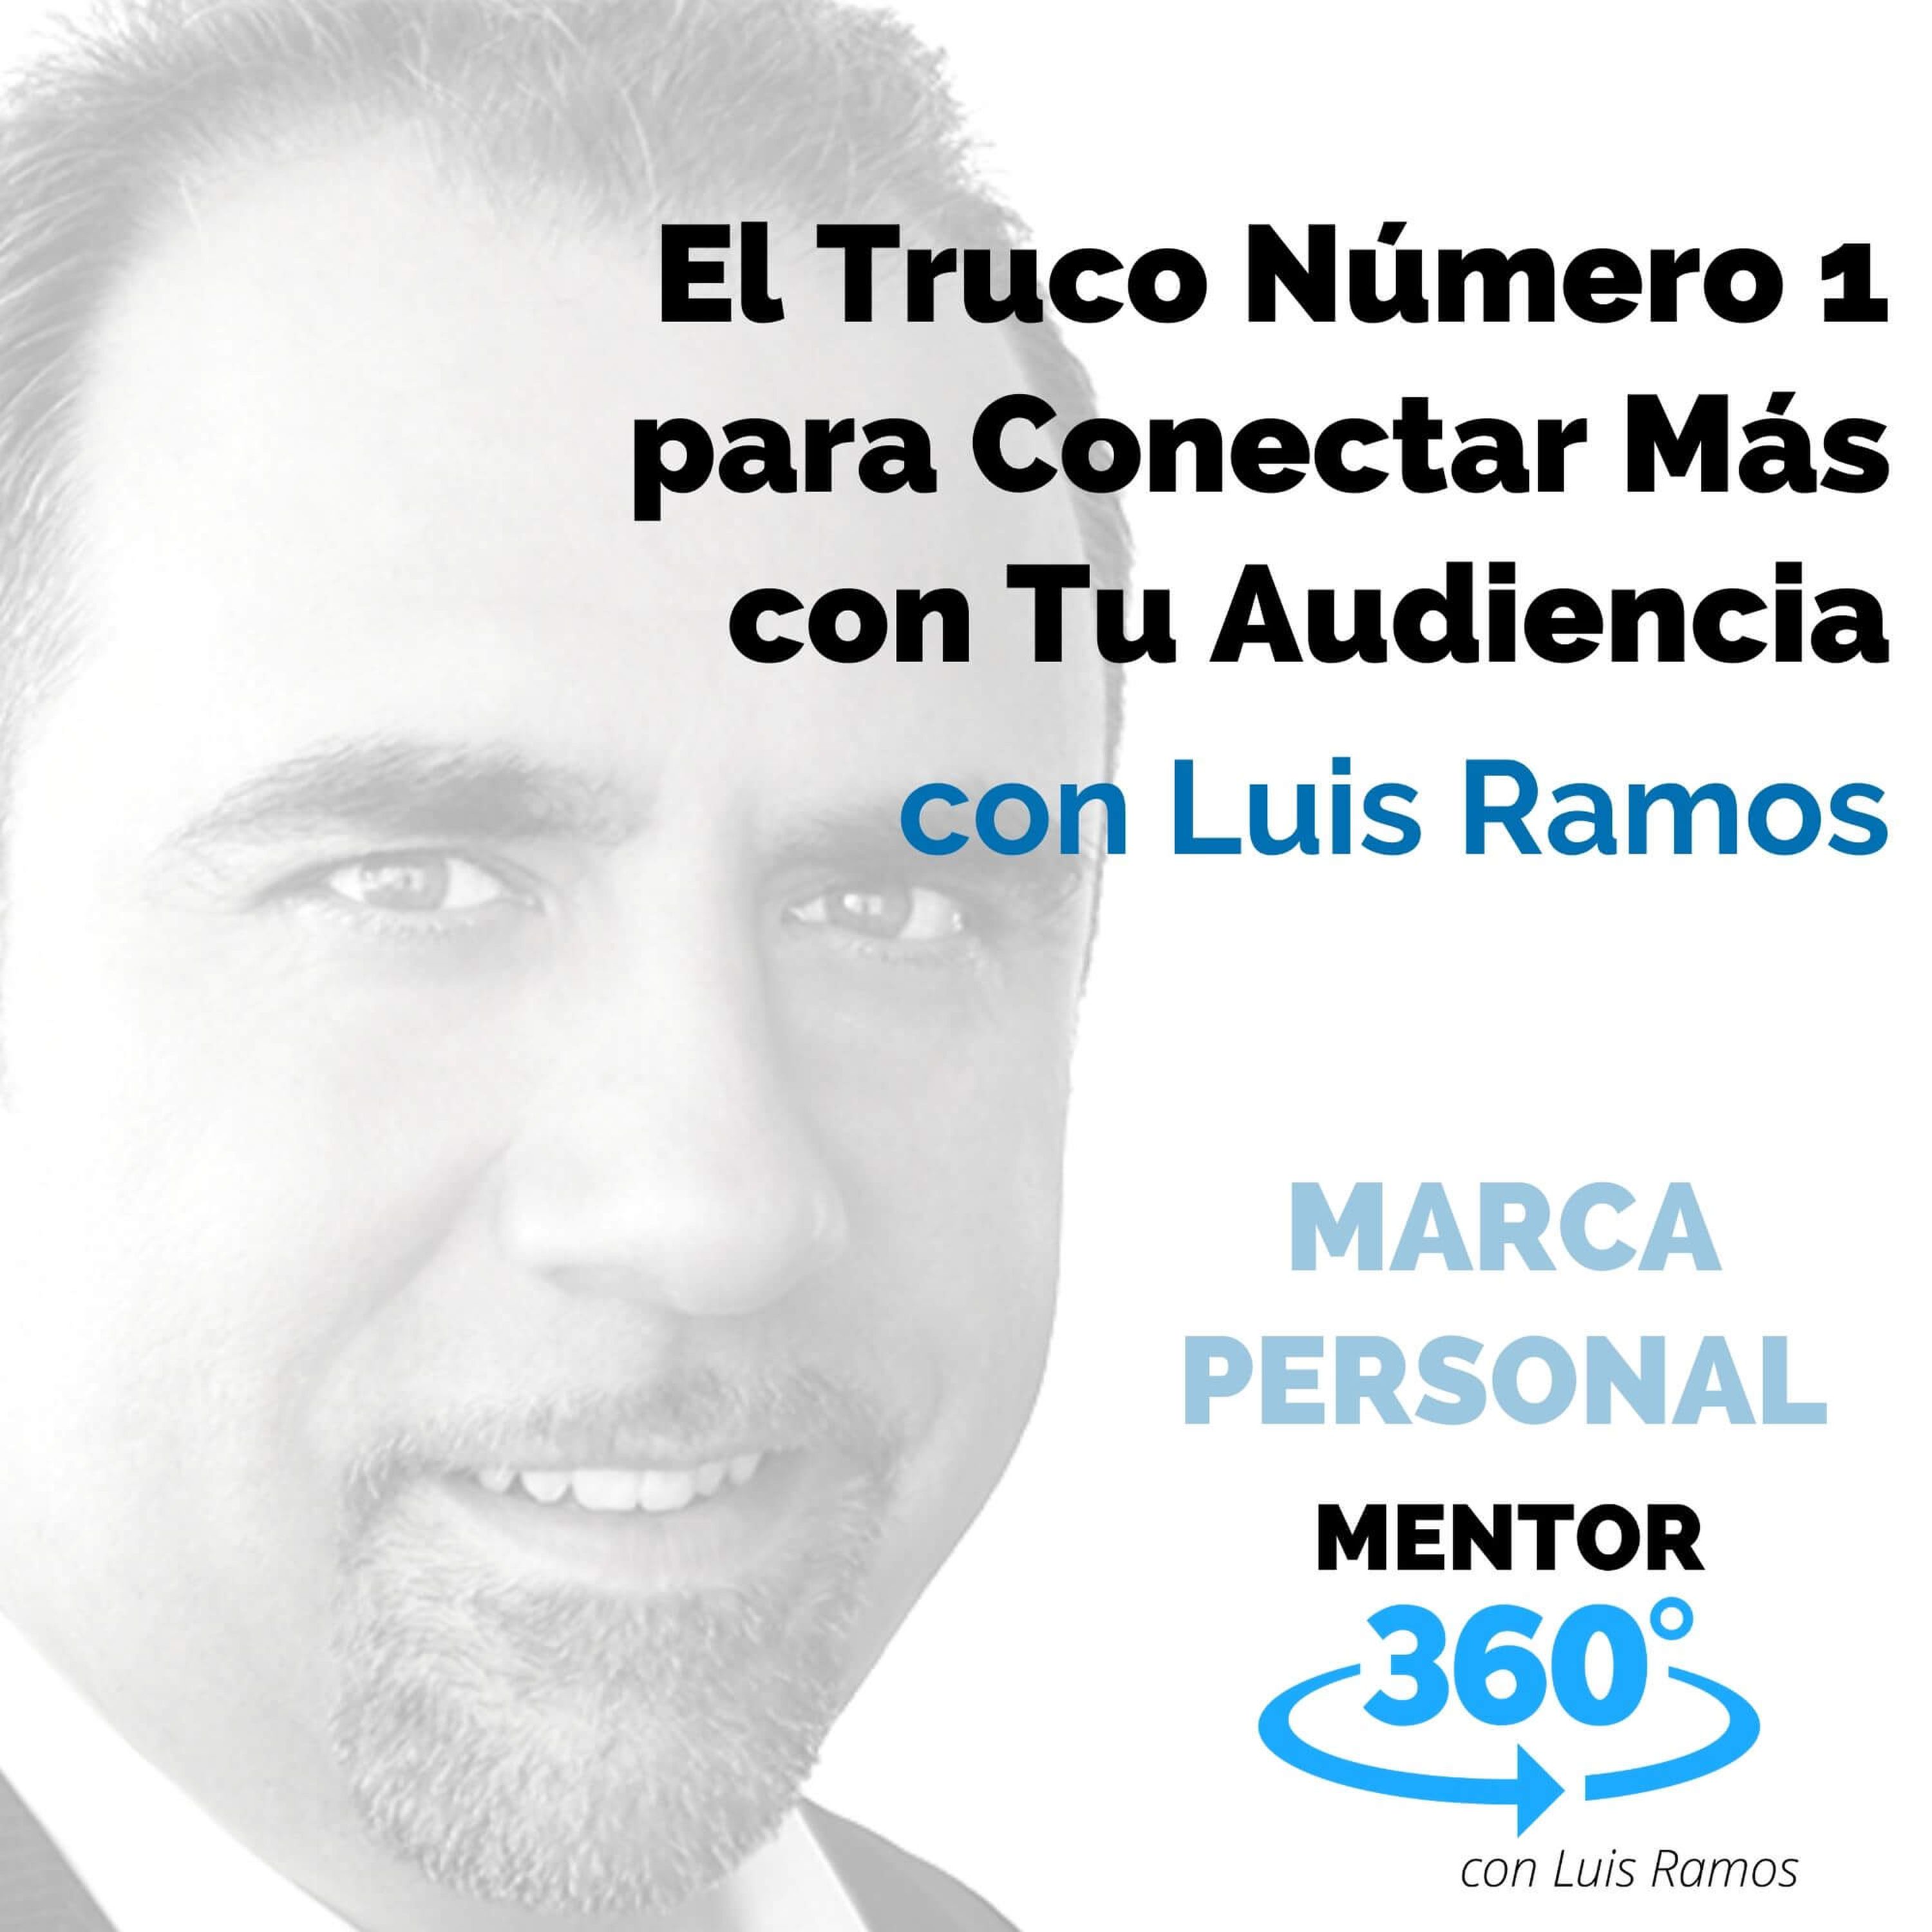 El Truco Número 1 para Conectar Más con Tu Audiencia, con Luis Ramos - MARCA PERSONAL